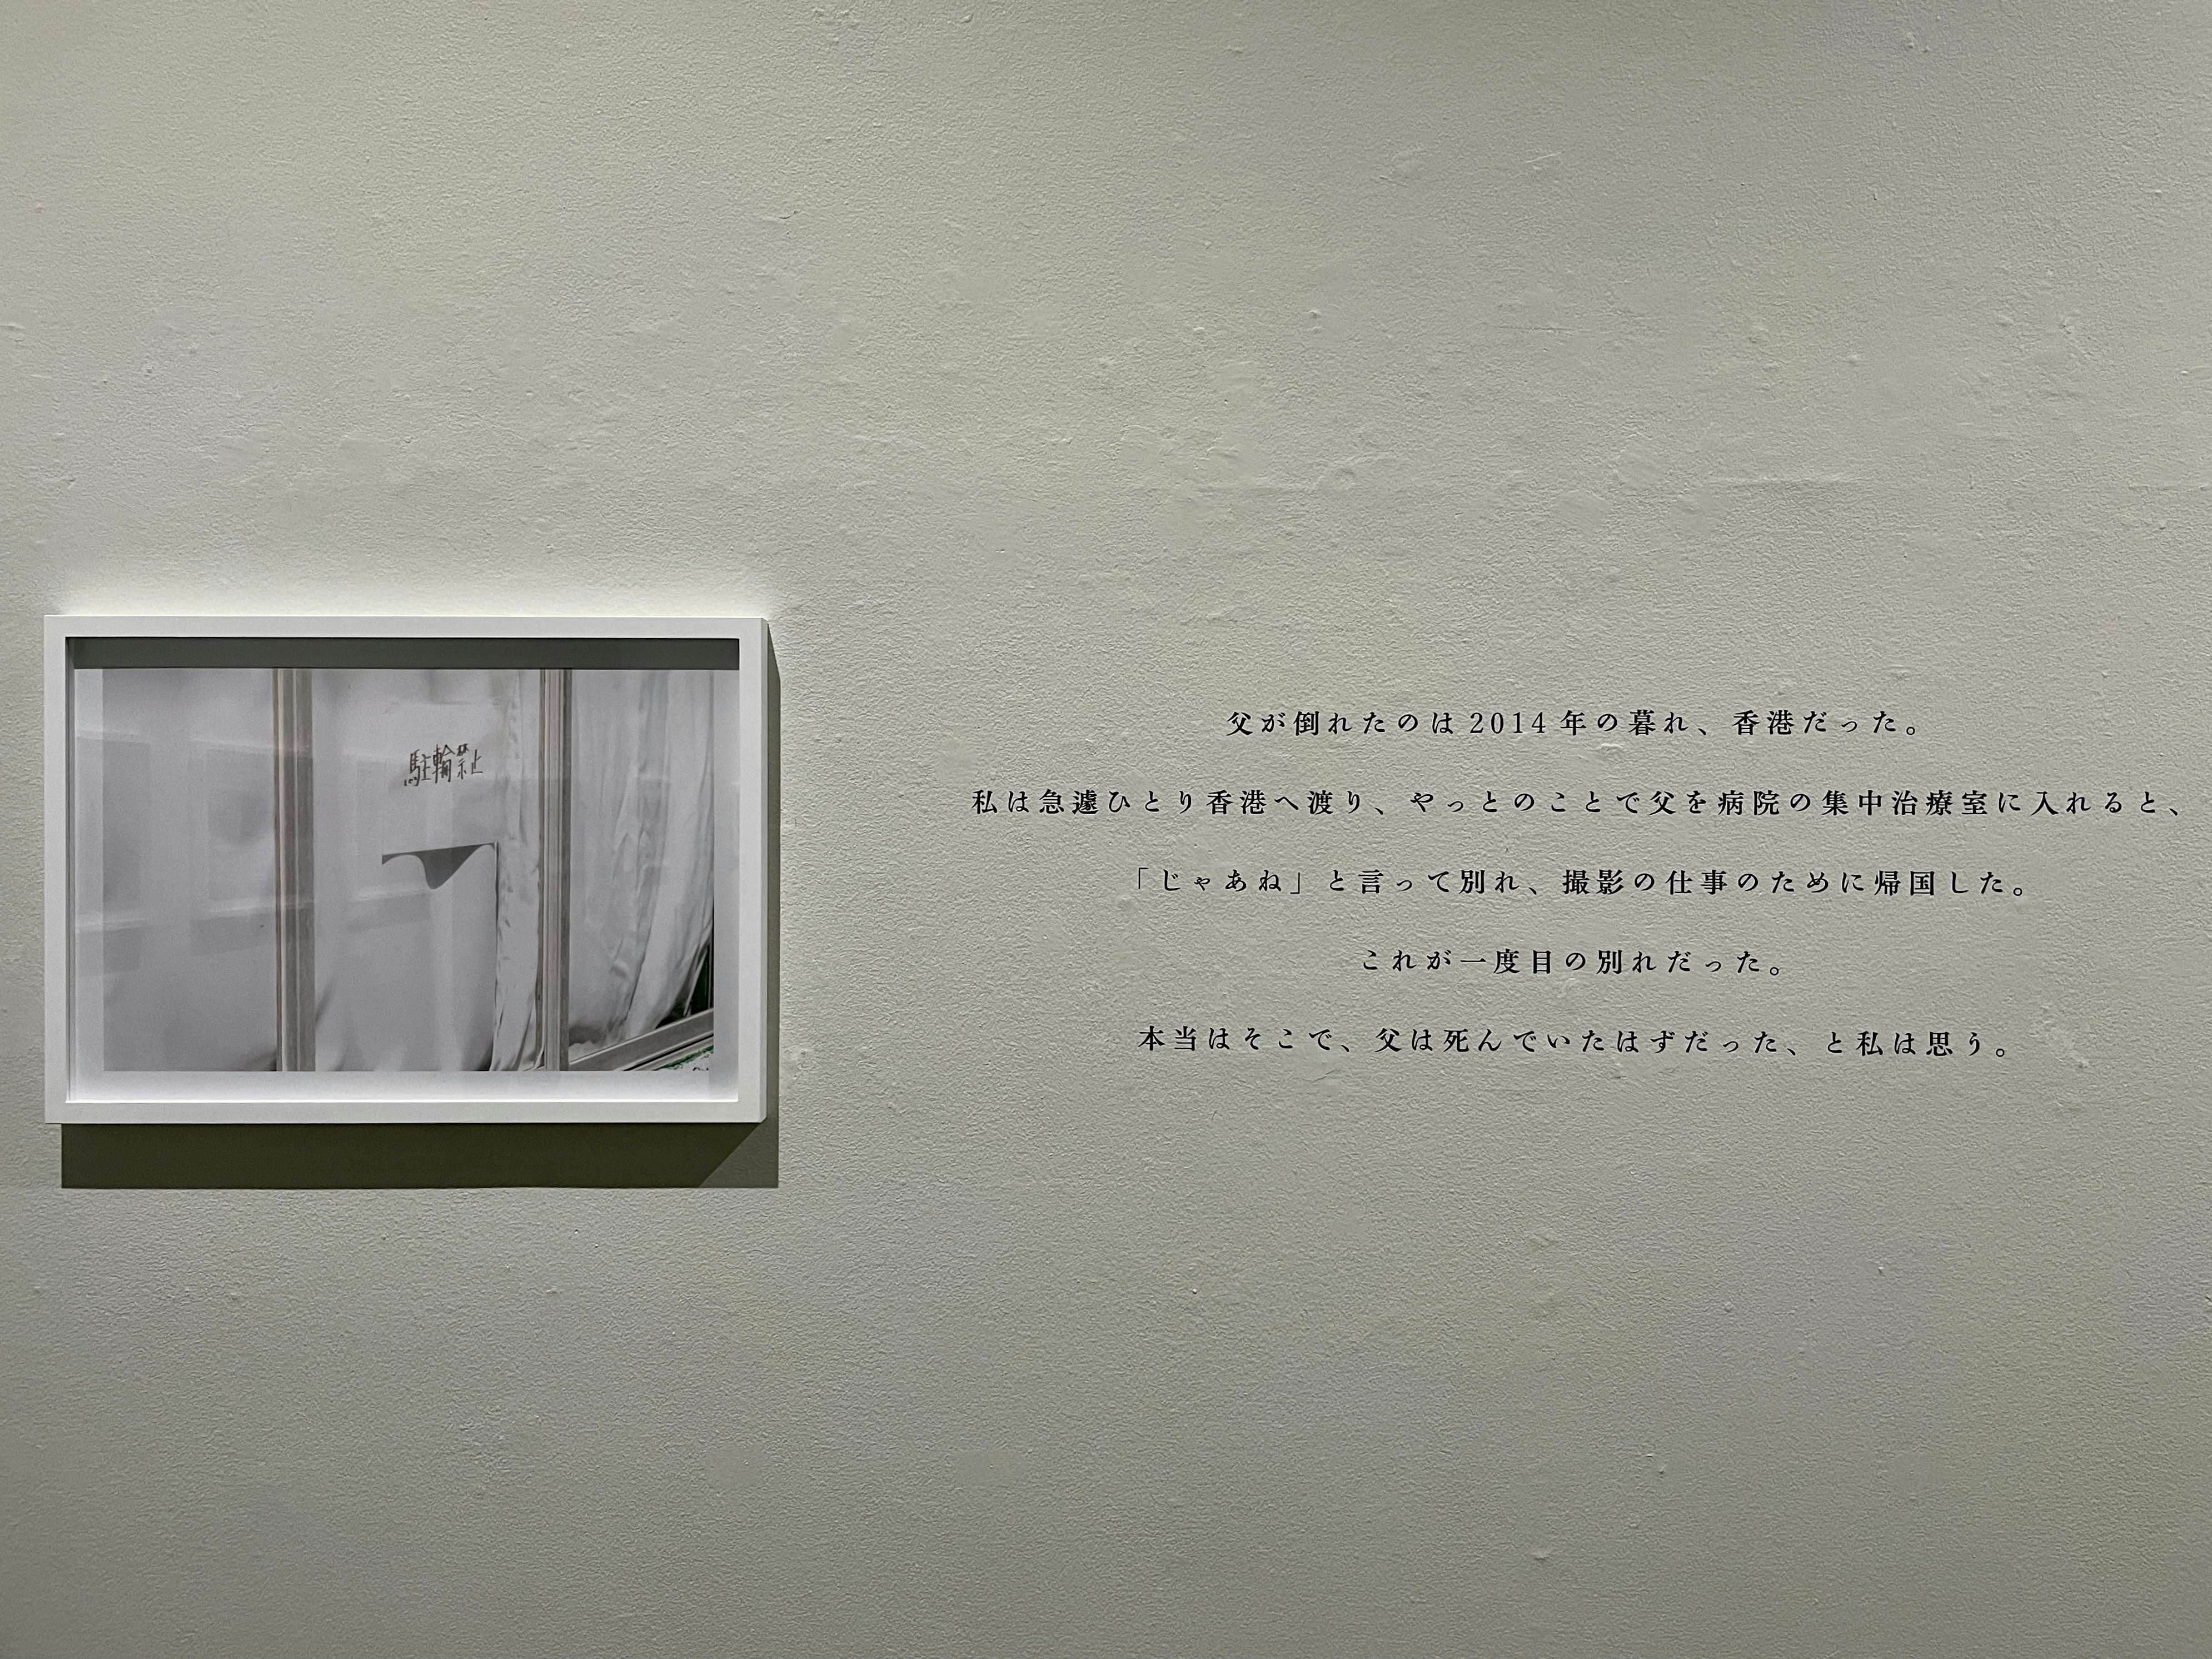 蜷川実花の世界に没入する 虚構と現実の間に が上野の森美術館で開幕 美術手帖